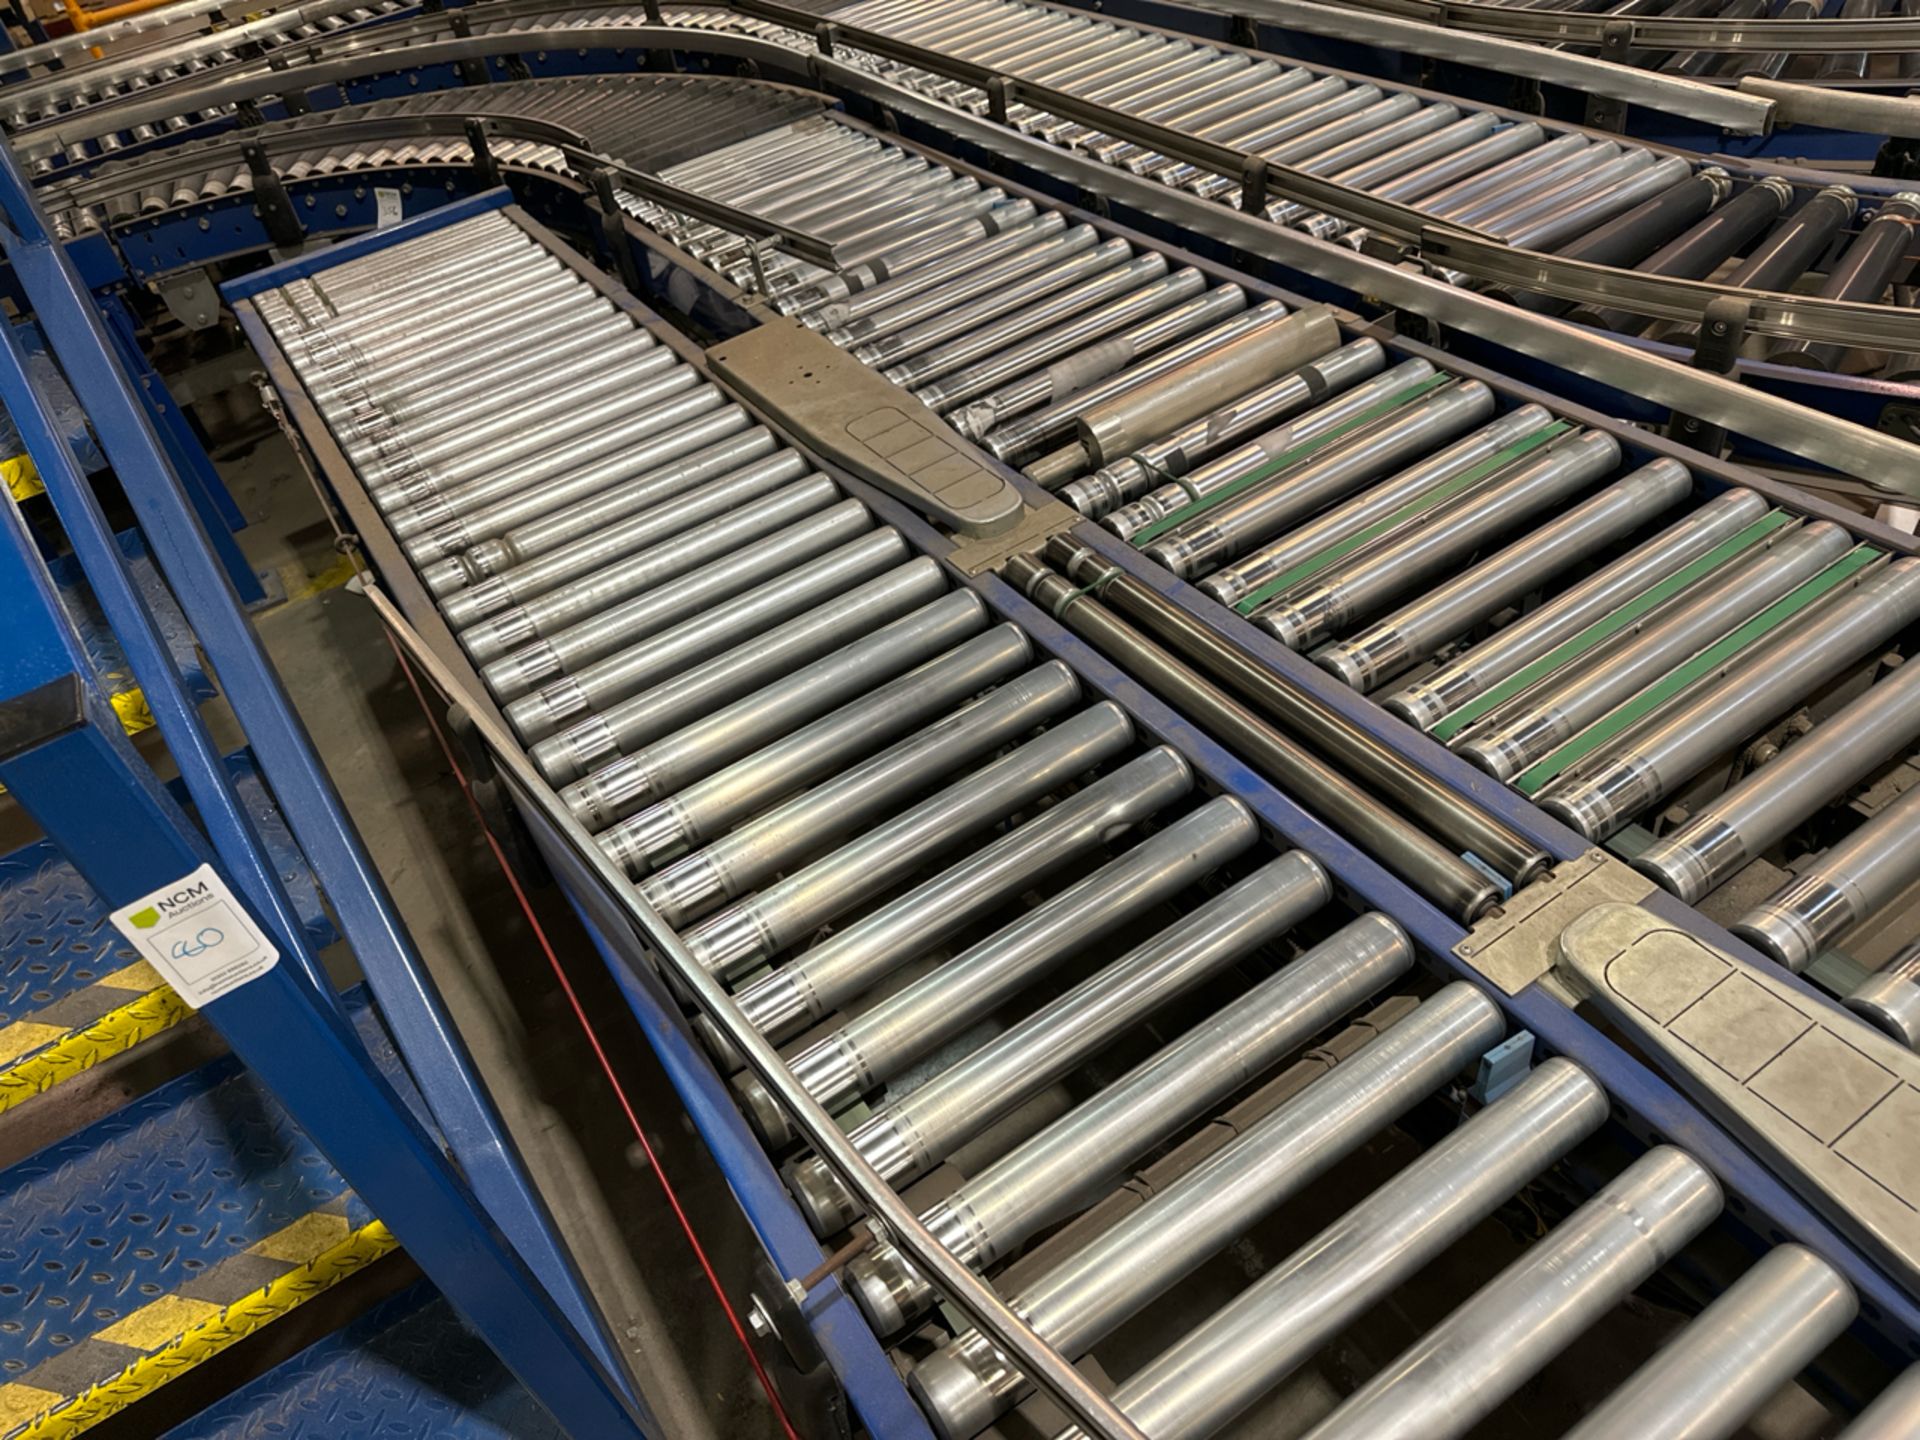 Motorised Roller Conveyor - 2 Rows - Image 8 of 9